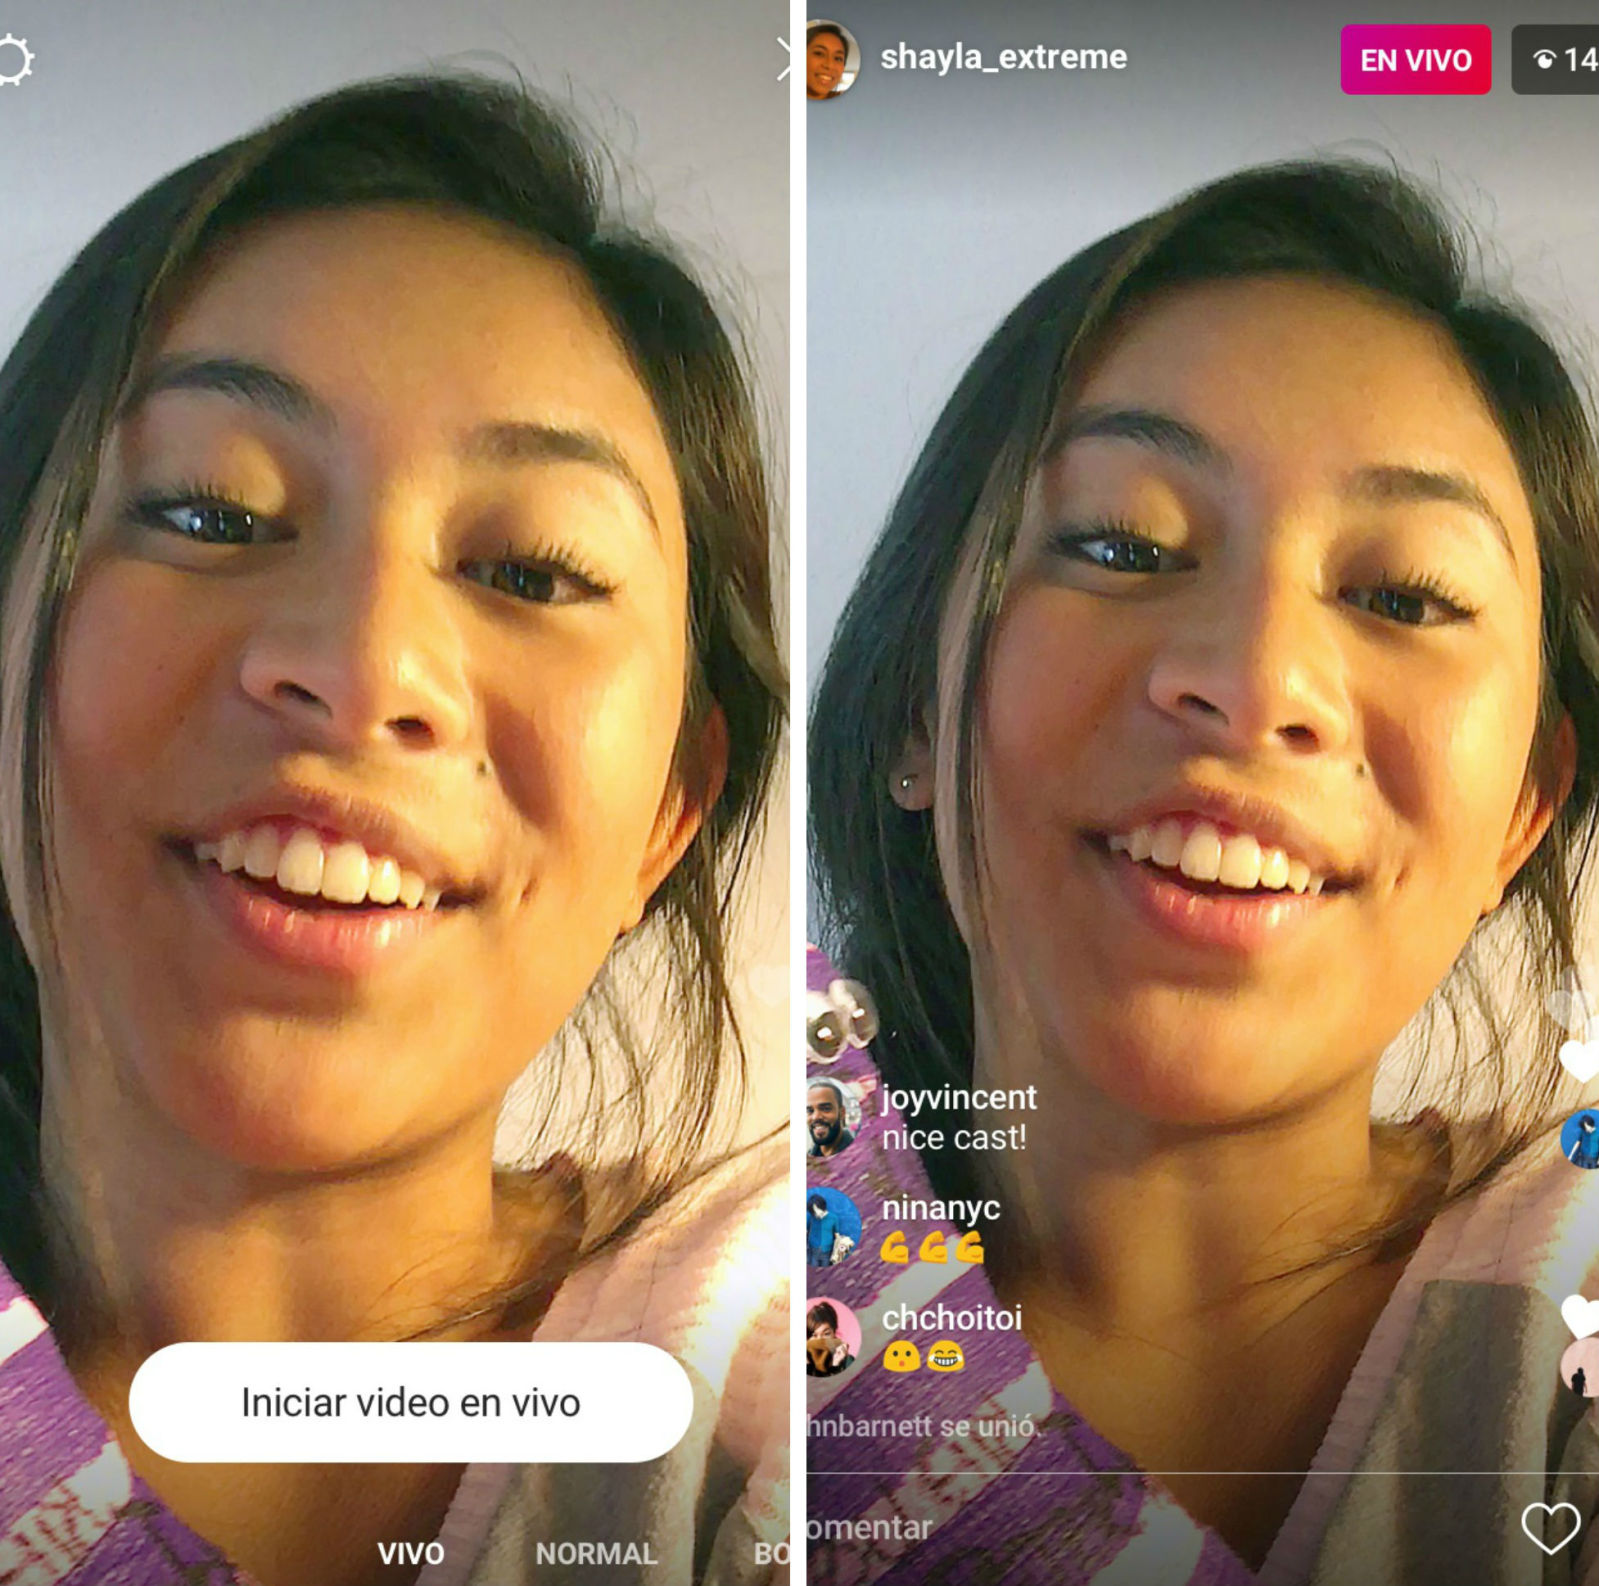 Instagram ya permite hacer transmisiones en vivo